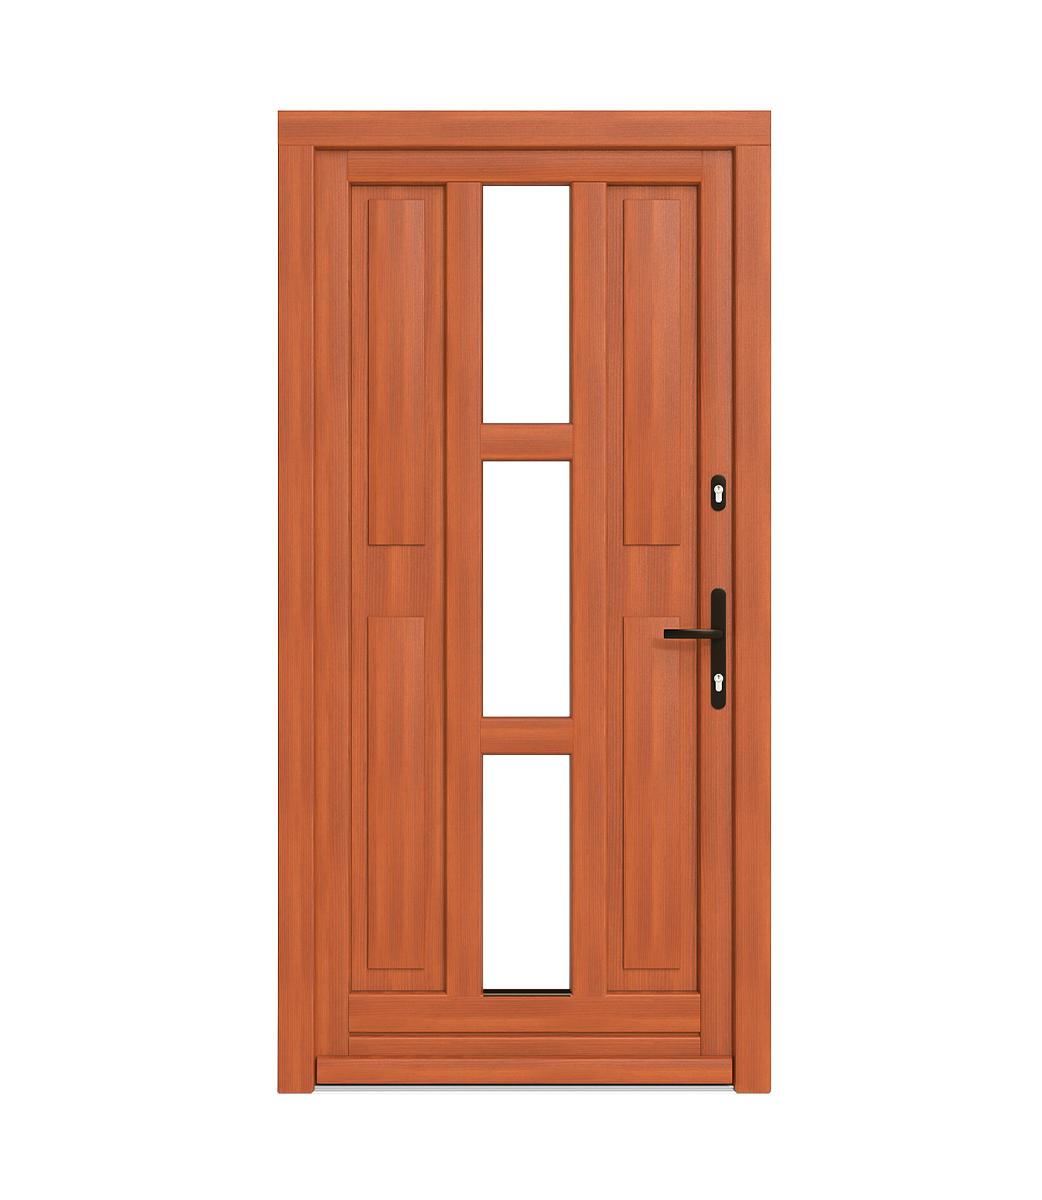 Spacers in wooden doors